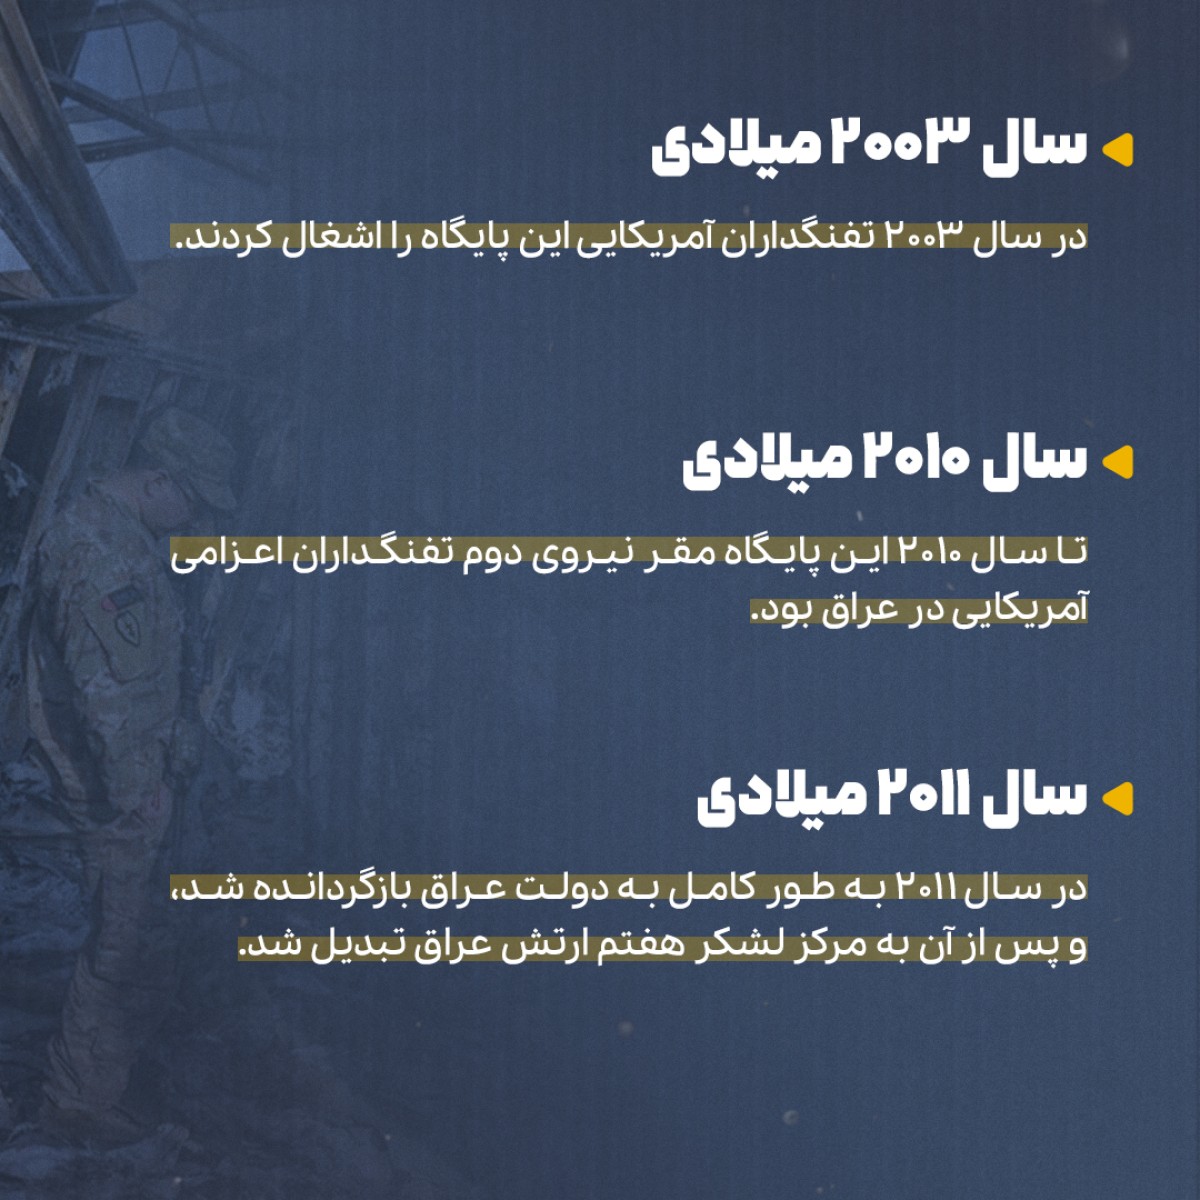 مجموعه پوستر انتقام سخت از پایتخت آمریکا در عراق